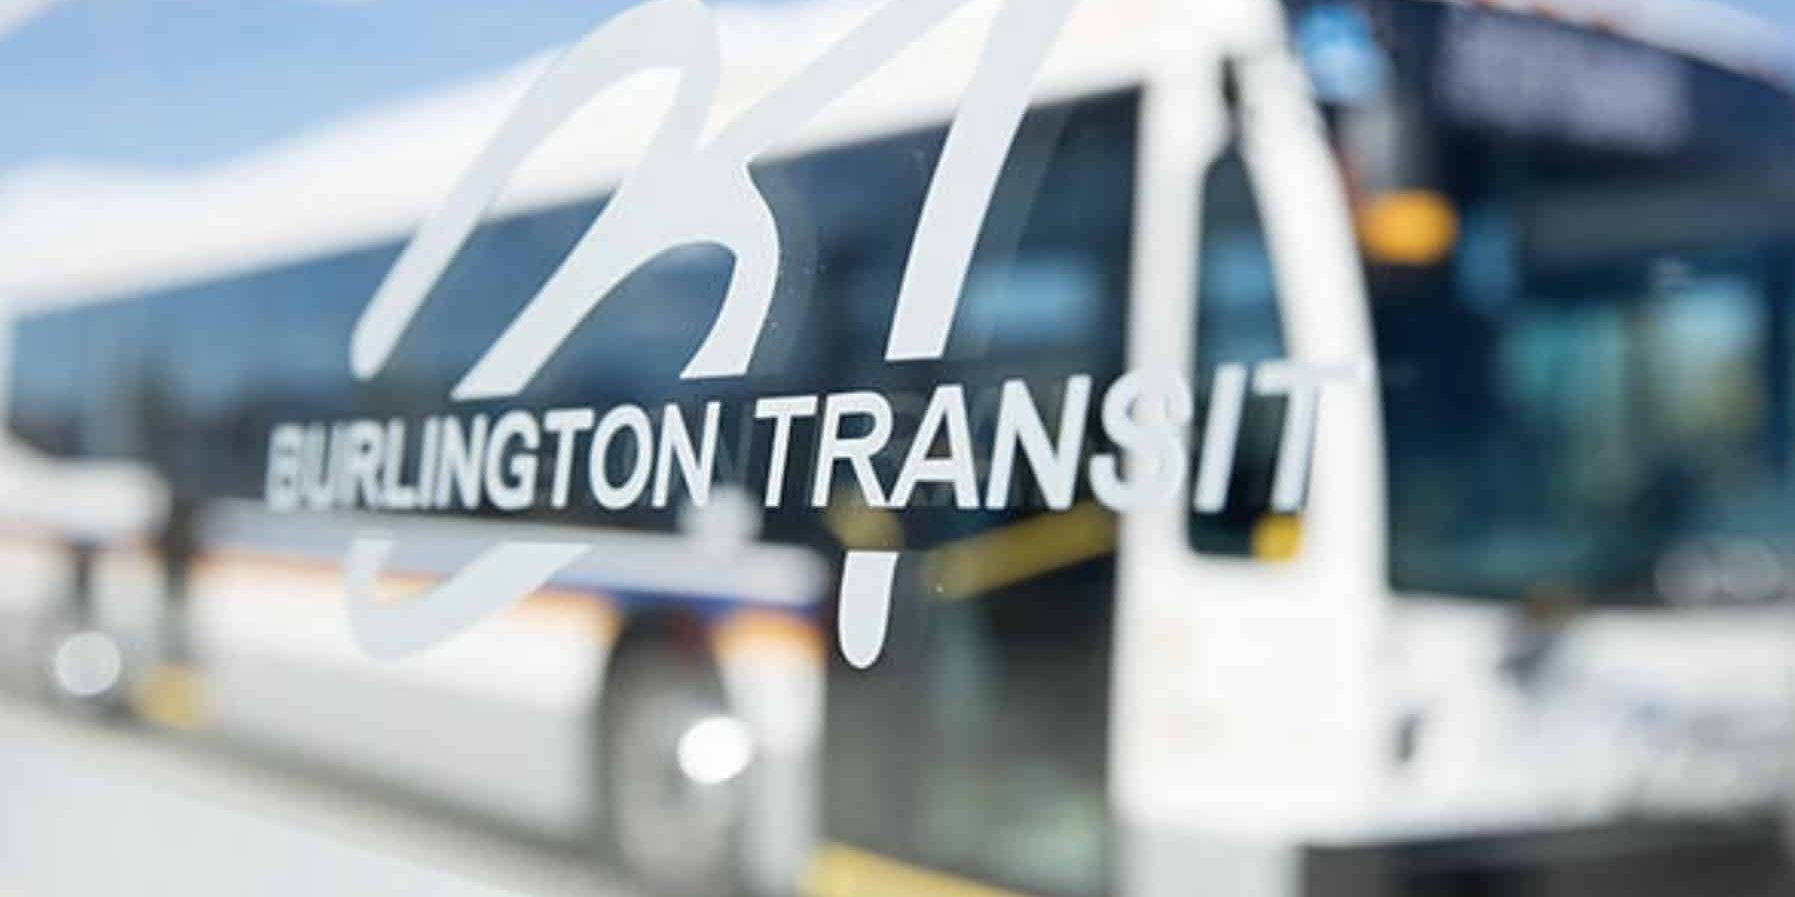 Burlington transit bus schedule trips